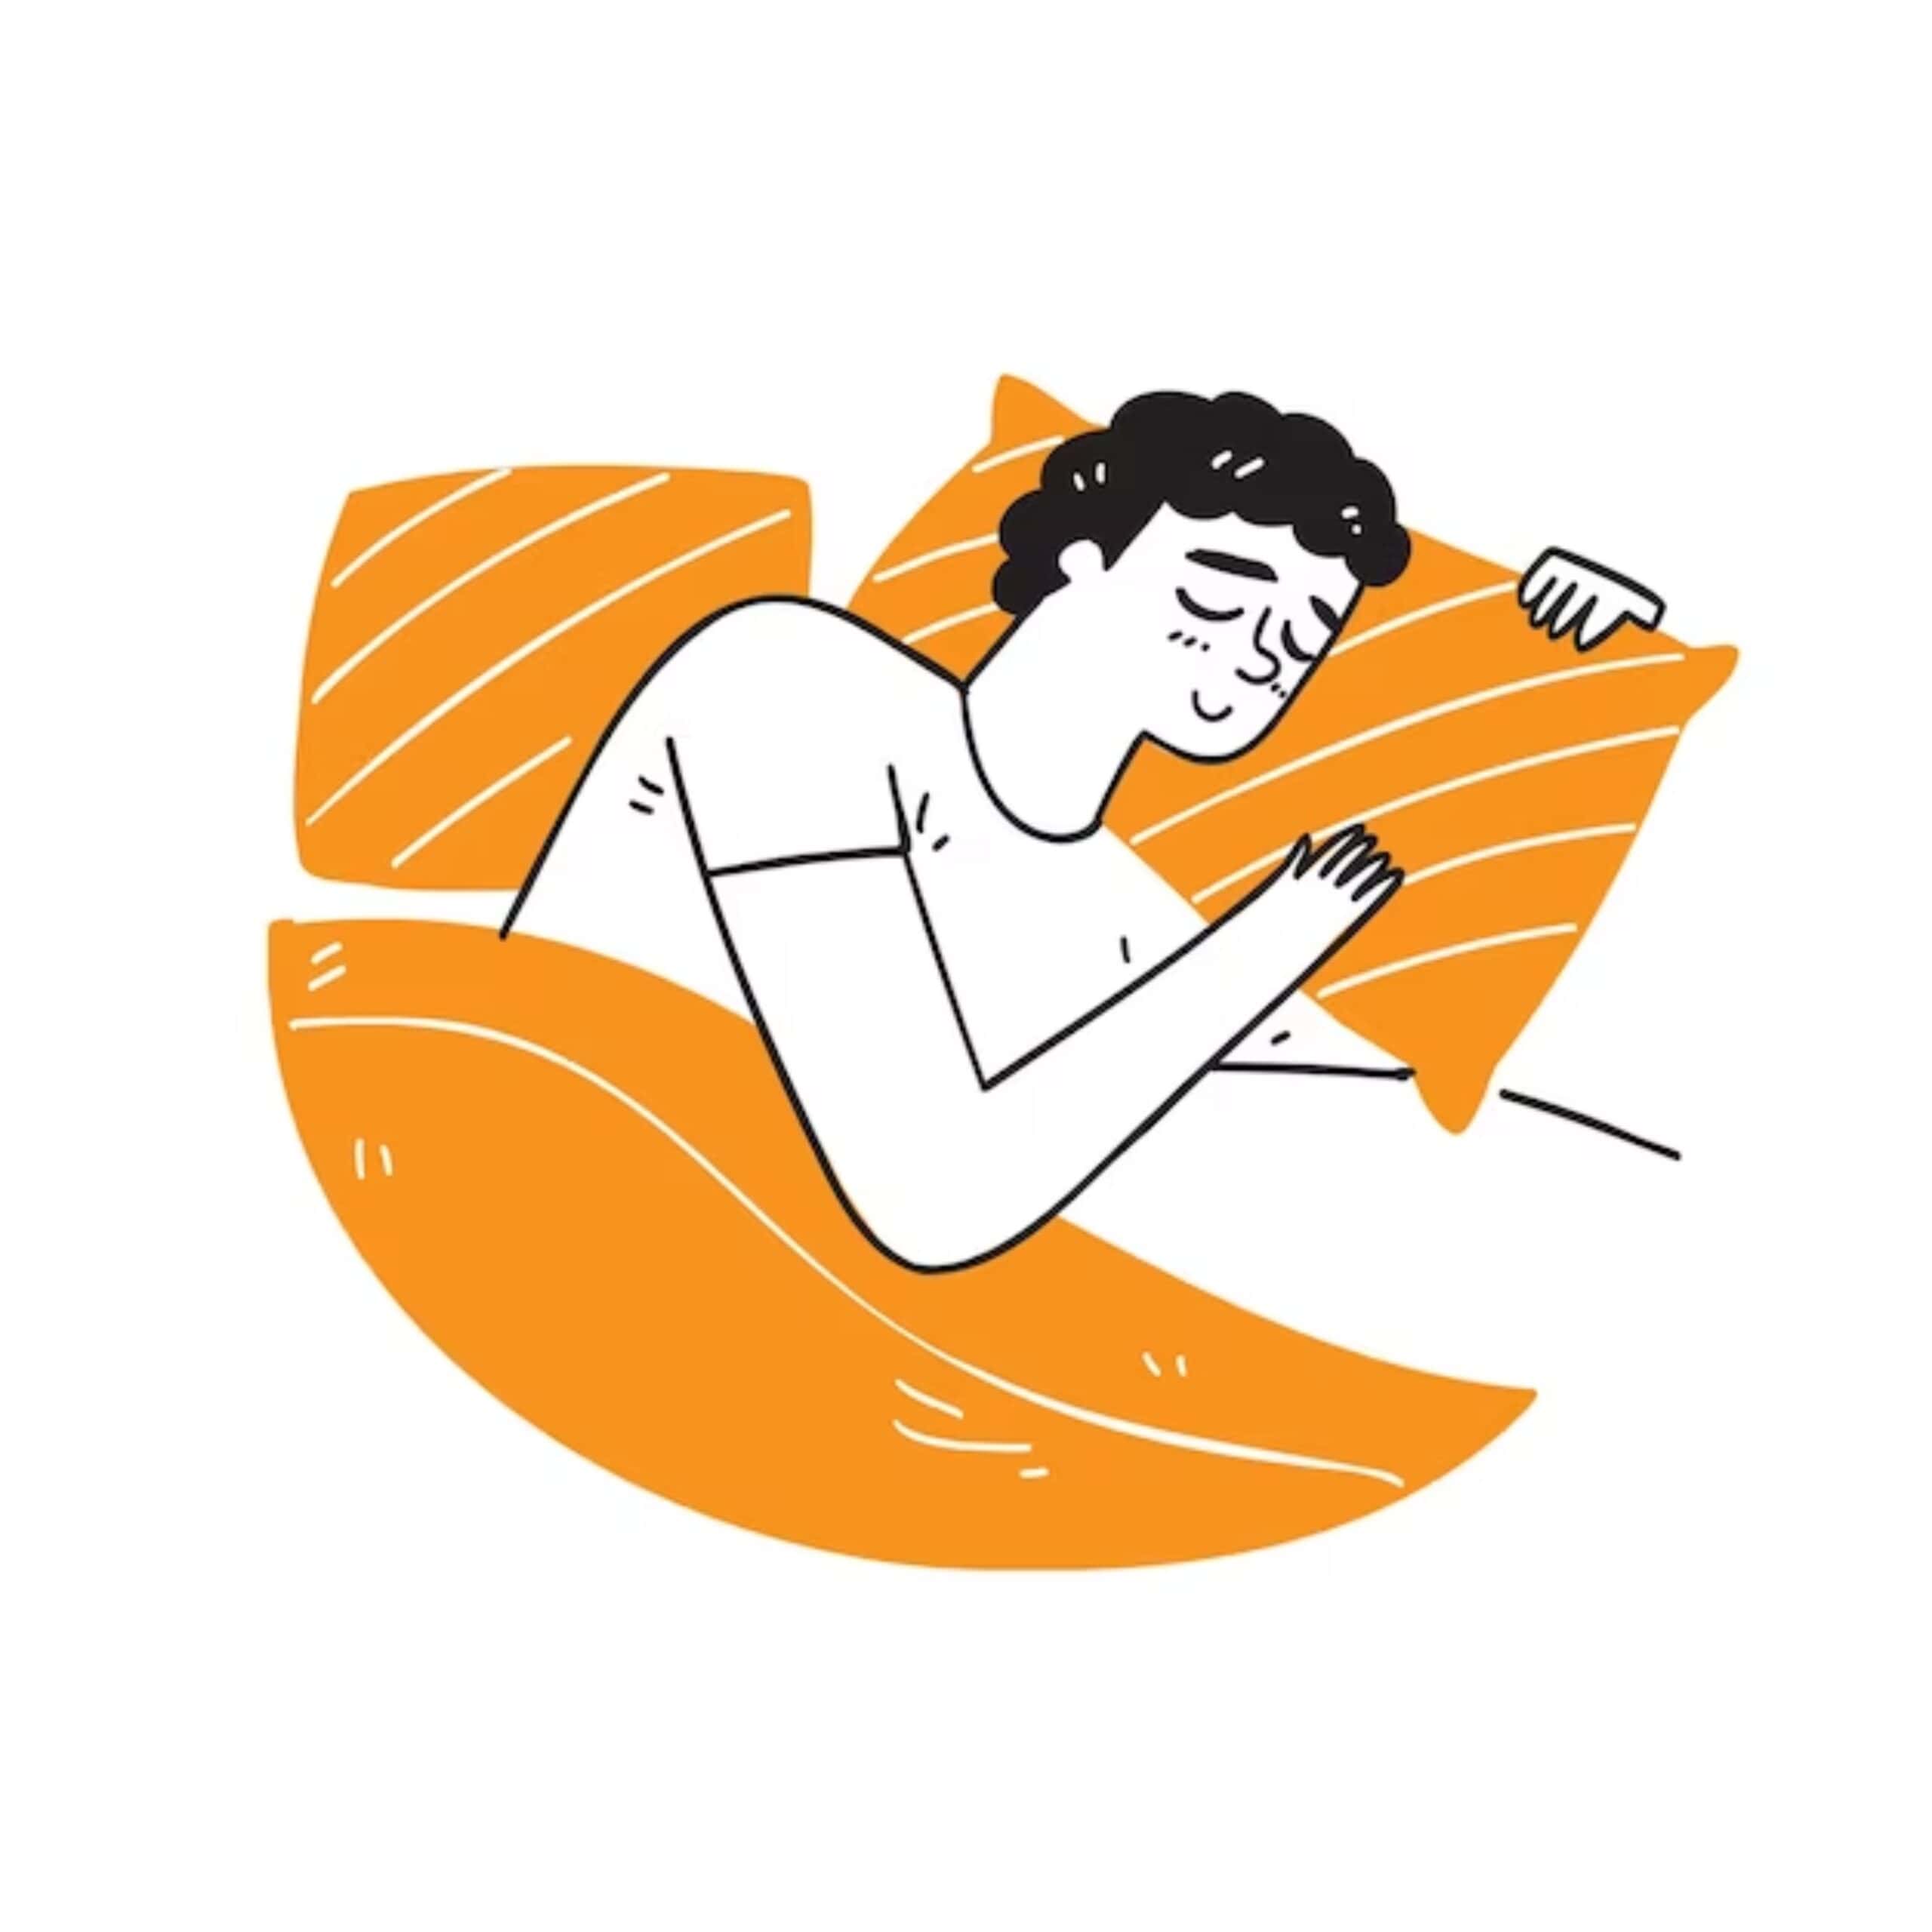 Egy rajzolt emberfigura, aki békésen alszik